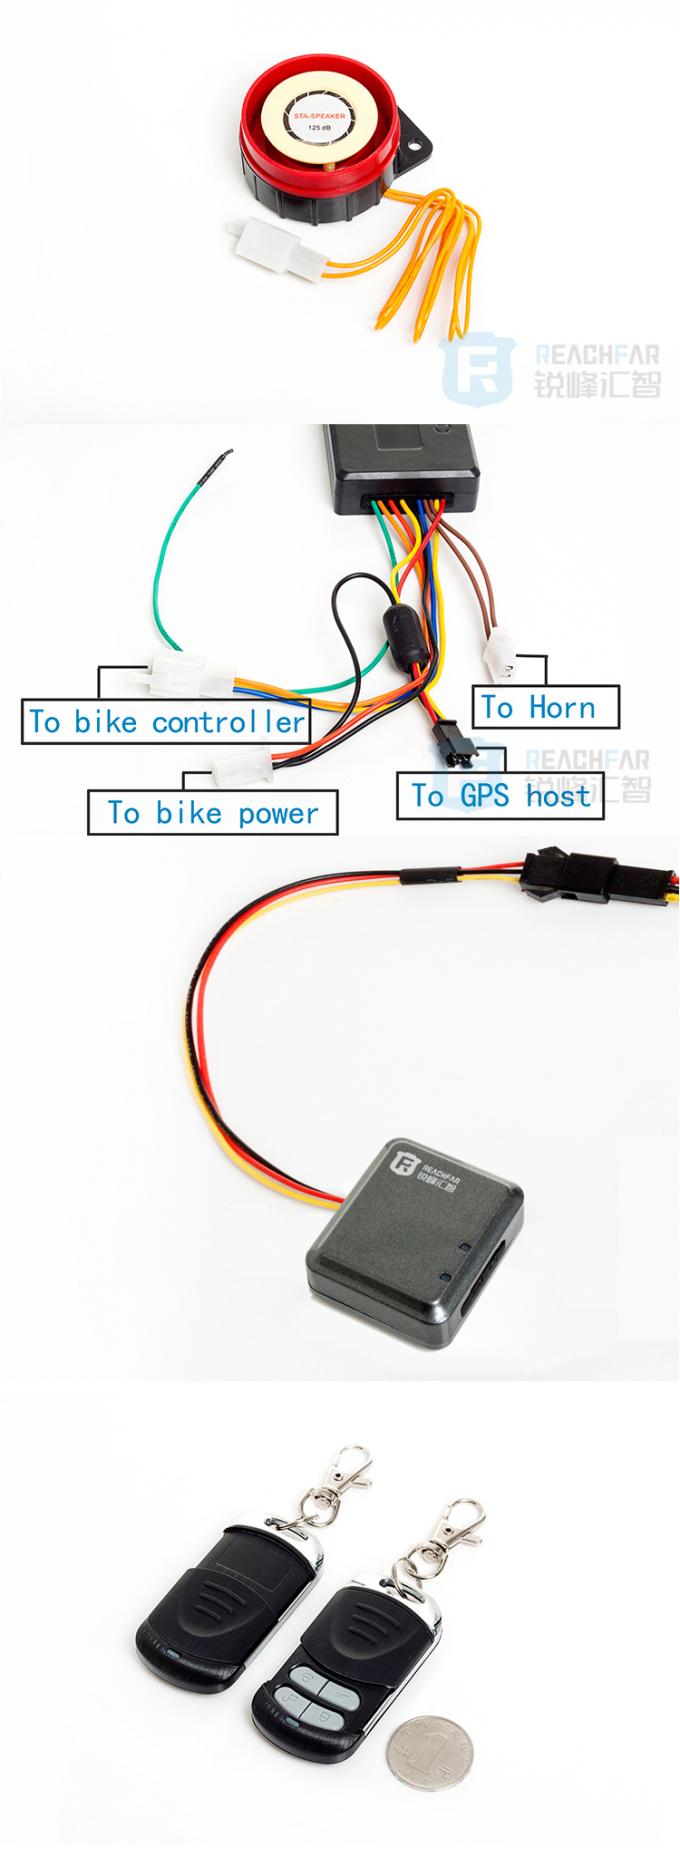 Do perseguidor contra-roubo dos gps da E-bicicleta de Reachfar v12+mini veículo bonde da bicicleta que segue o alarme